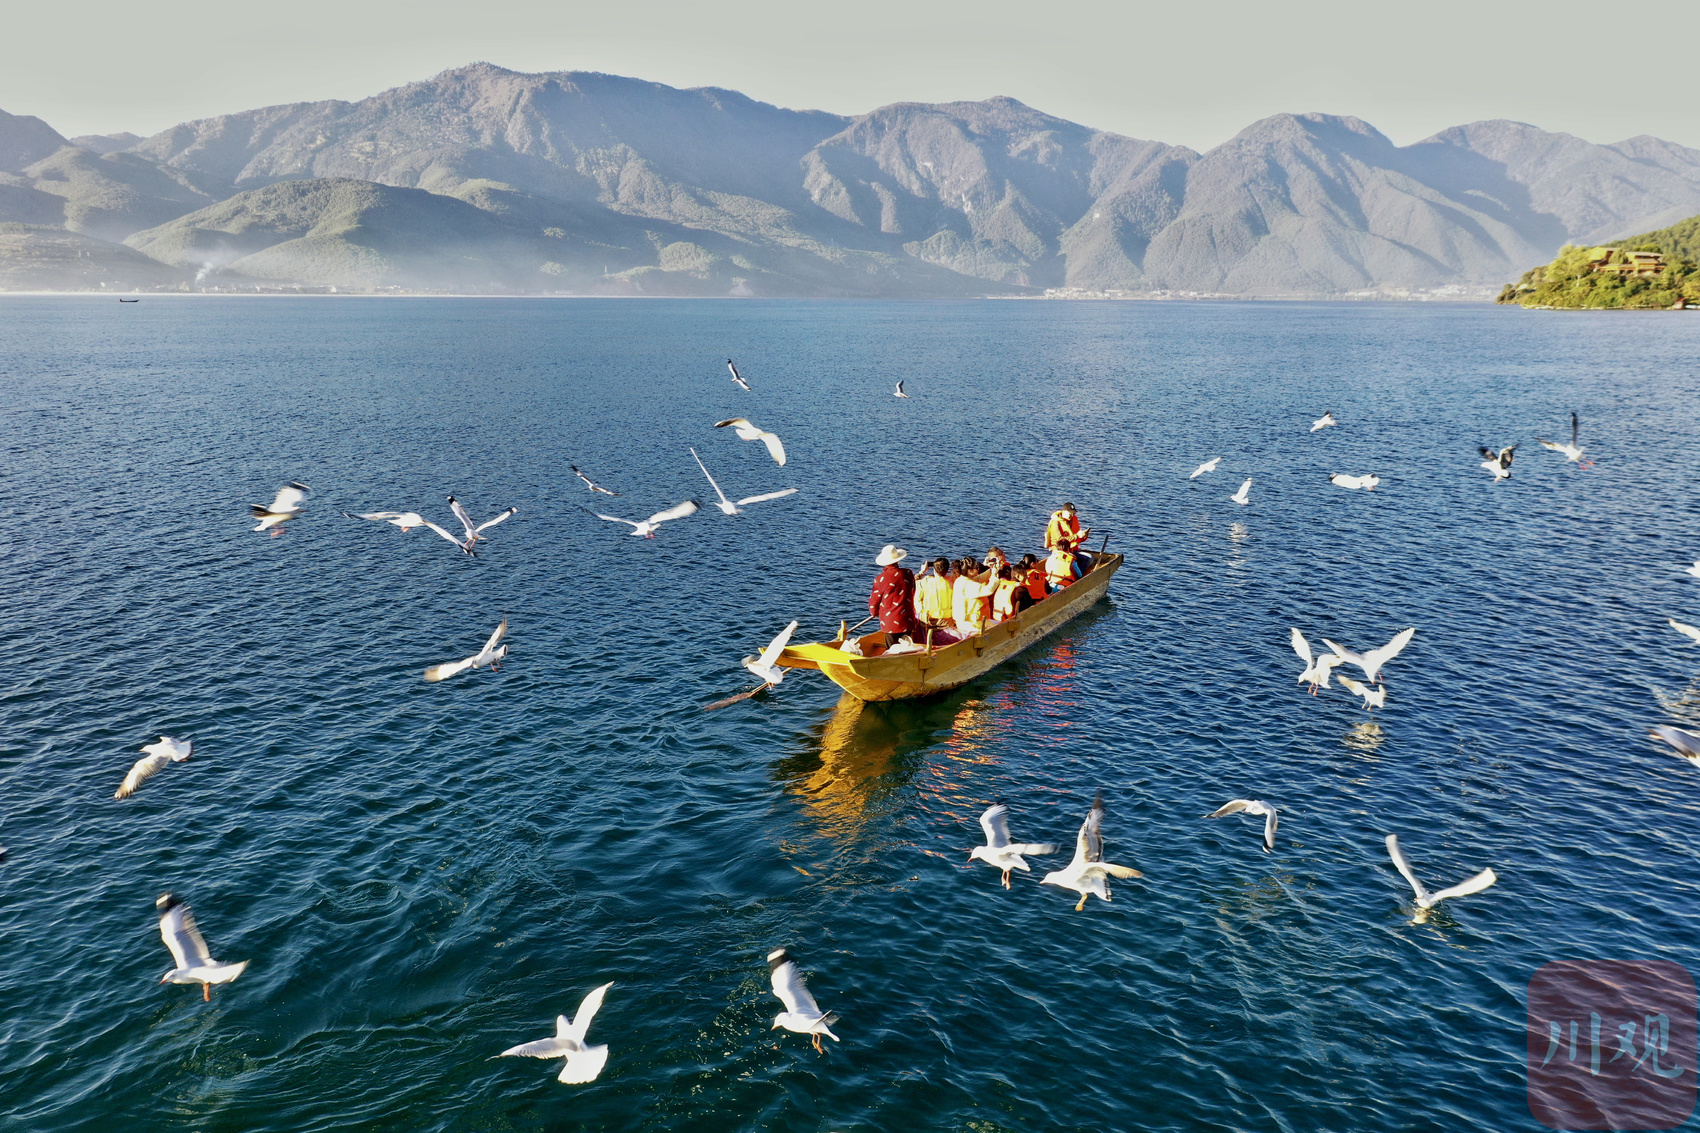  打造世界的泸沽湖 四川泸沽湖旅游策划和概念性规划设计方案出台